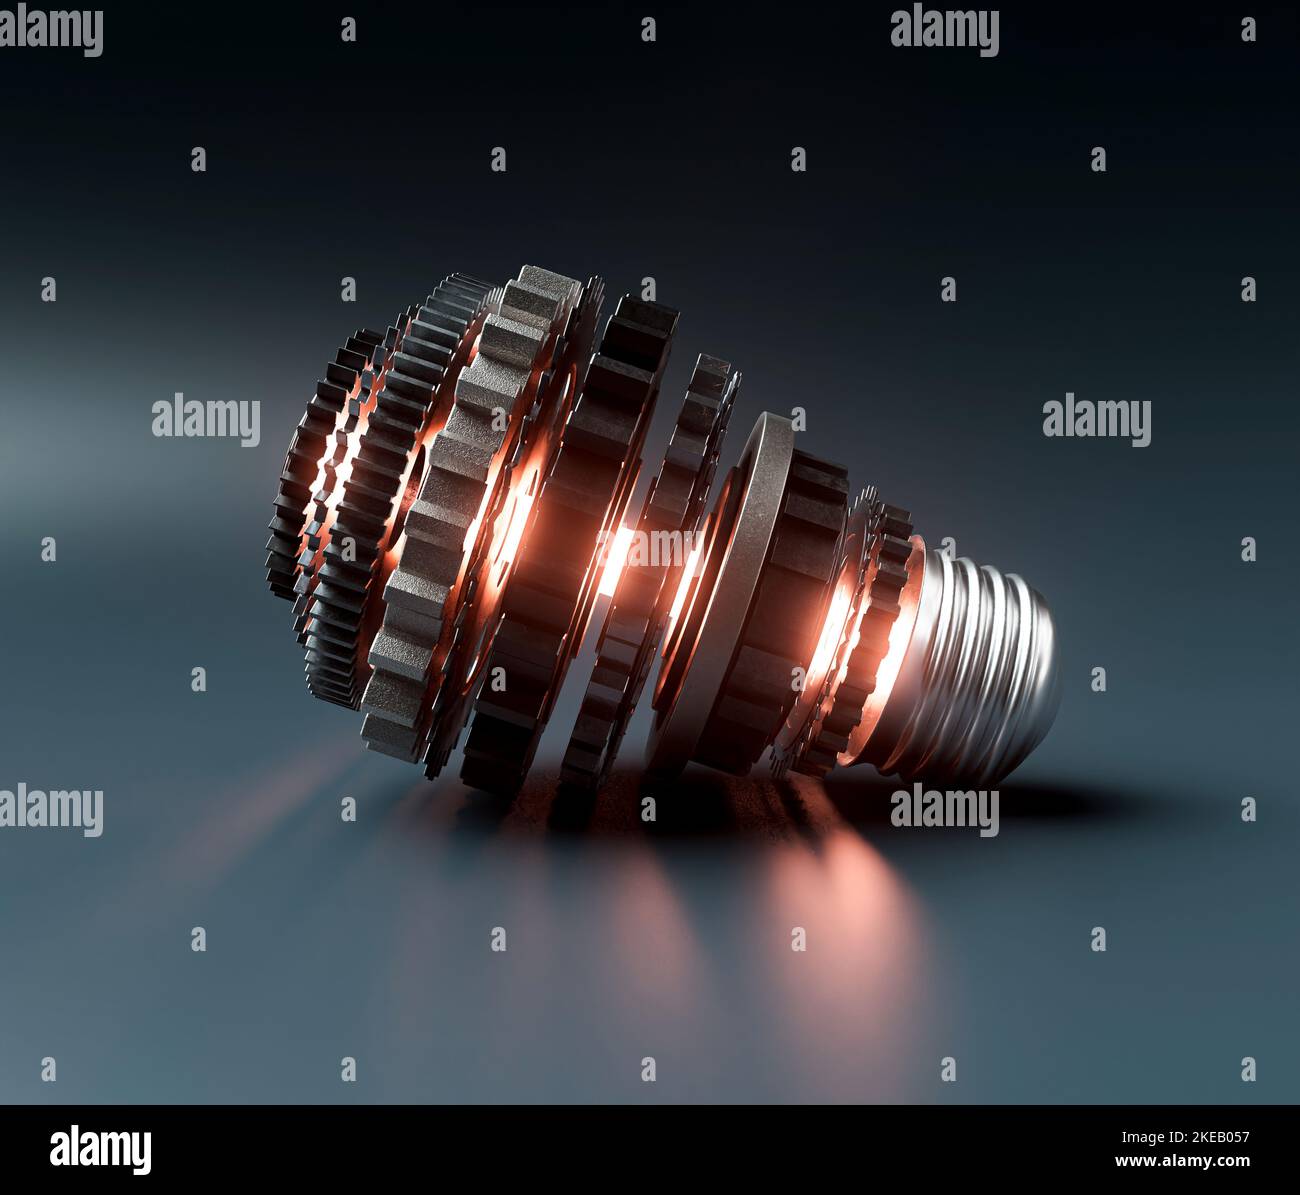 Ein Glühbirnen-Konzept aus Zahnrädern aus Metall und ein zentrales neon-beleuchtetes Lgiht, das Fantasie auf einem dunklen dramatischen Hintergrund symbolisiert - 3D Render Stockfoto